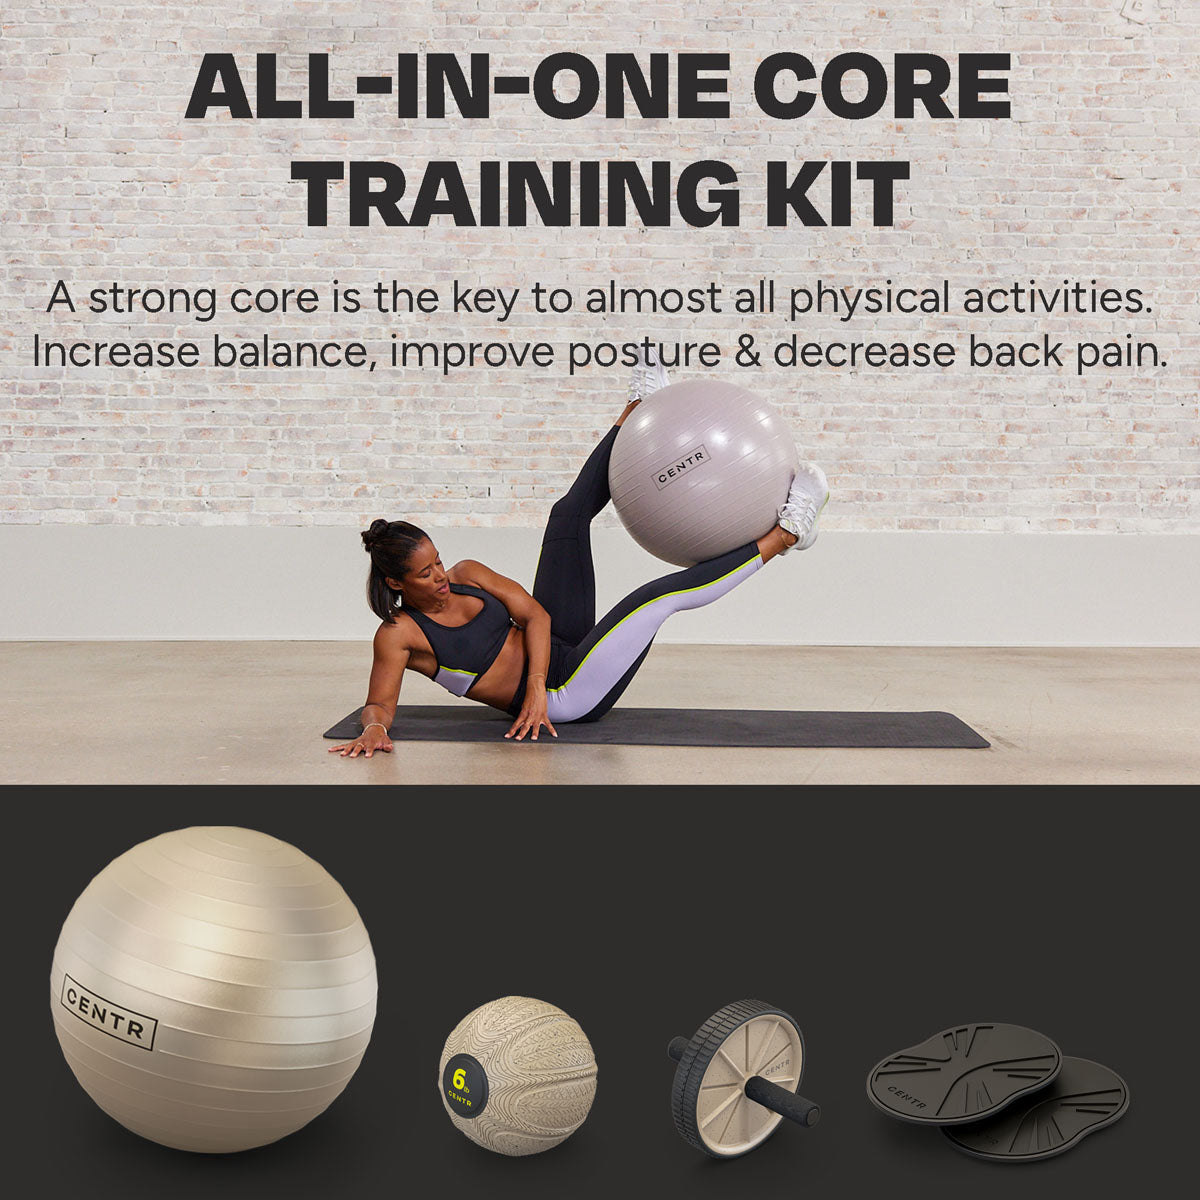 core training kit